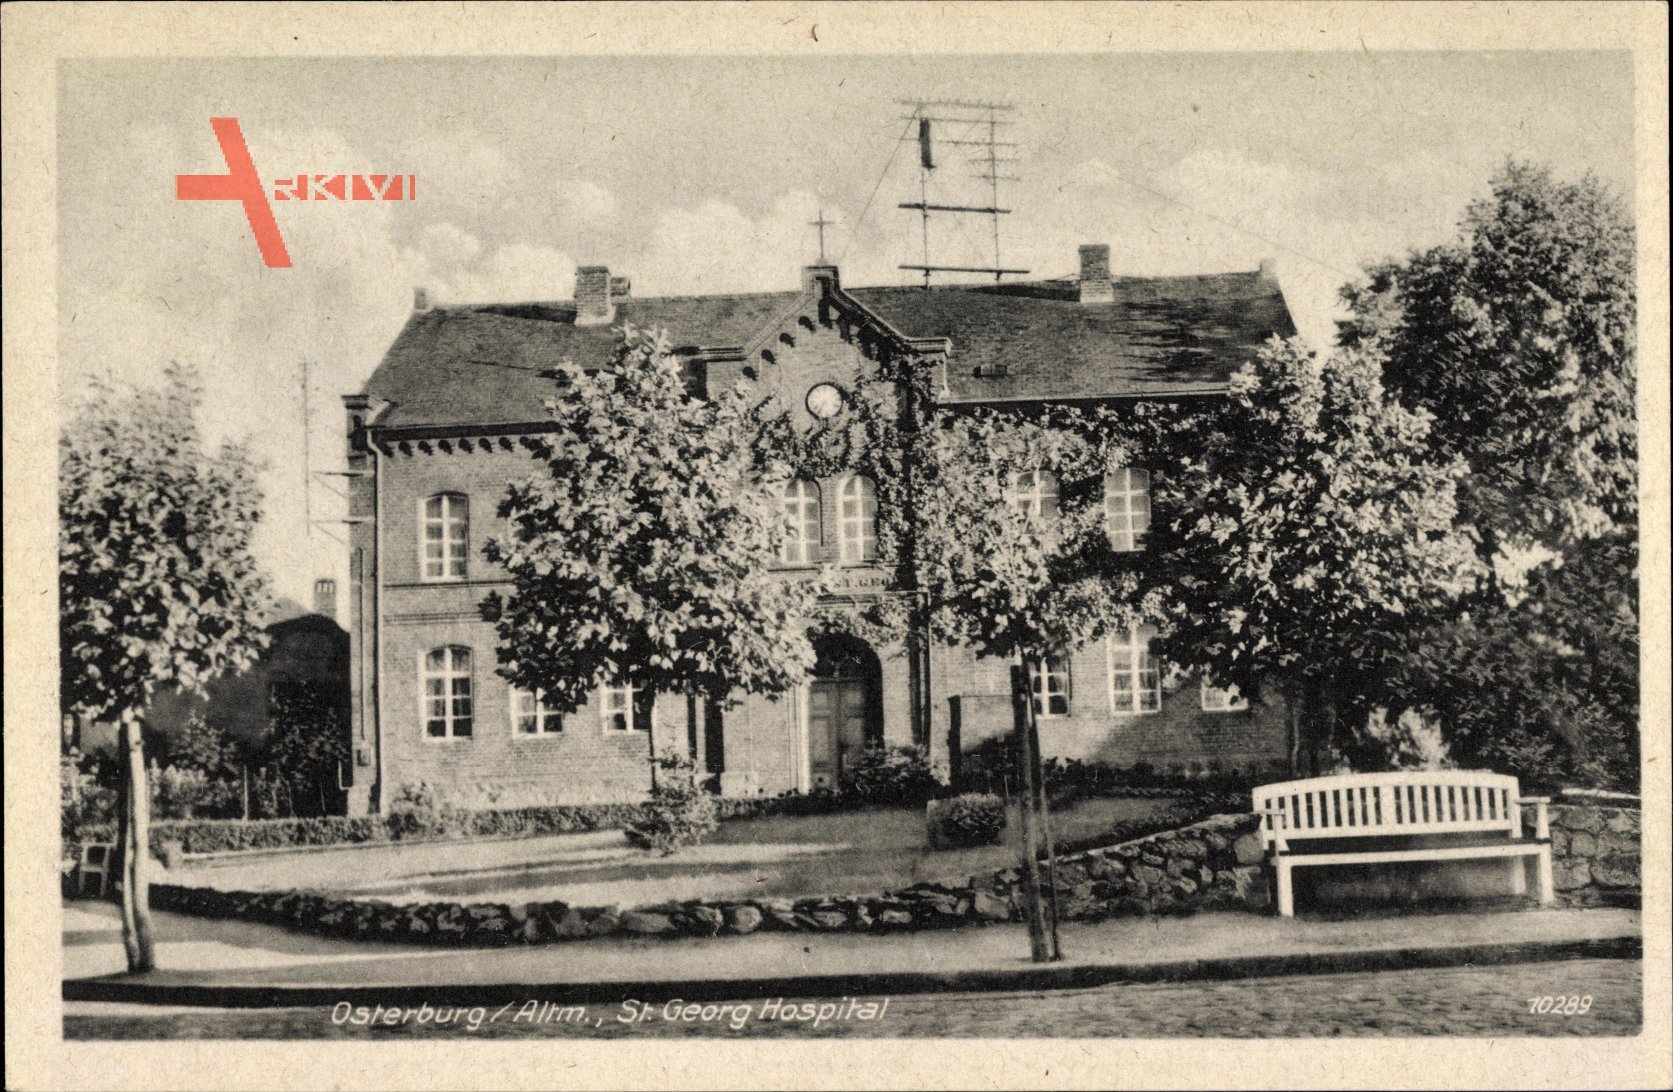 Osterburg in der Altmark in Sachsen Anhalt, St. Georg Hospital